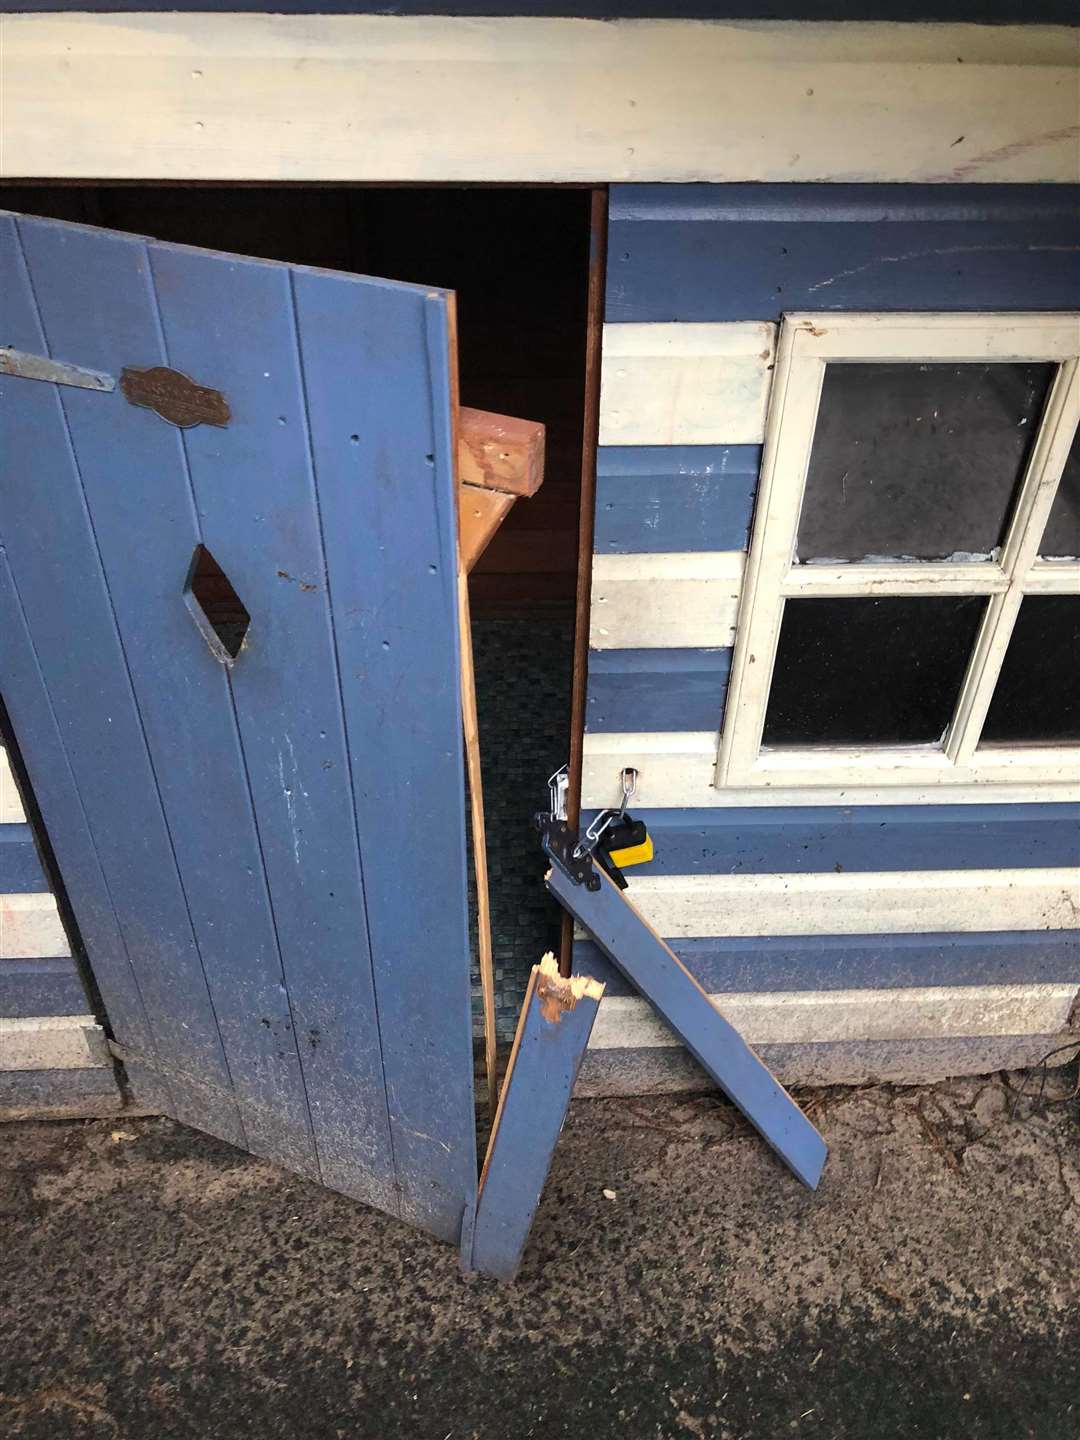 The children's playhouse had it's door broken and windows smashed (3712405)